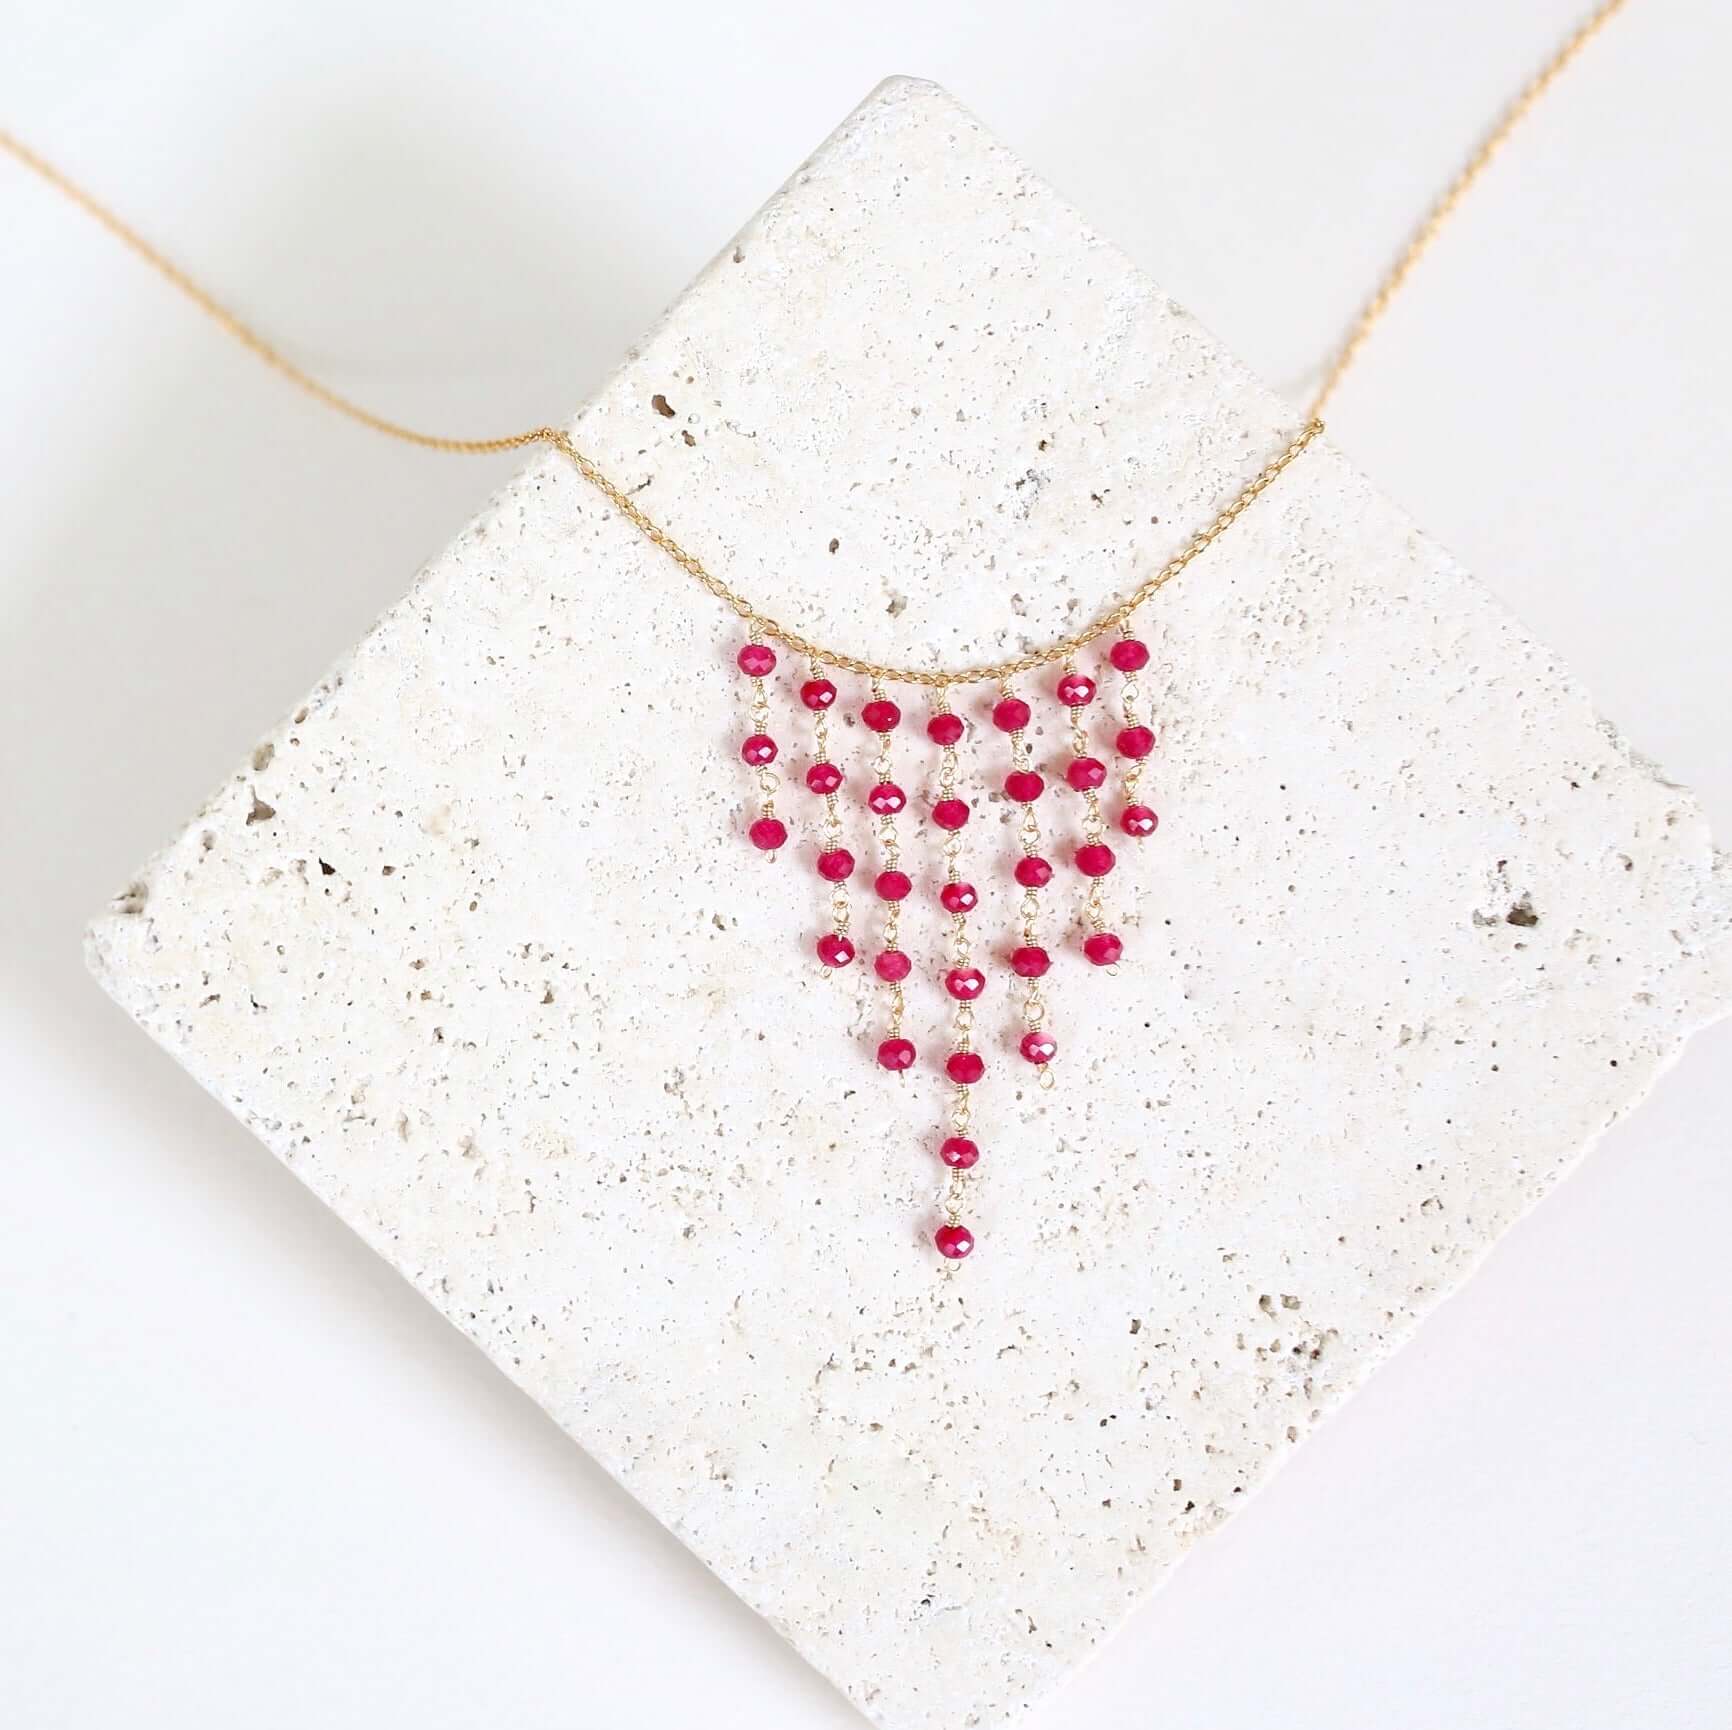 Gold Fringe Necklace featuring beautiful Ruby Quartz gemsto